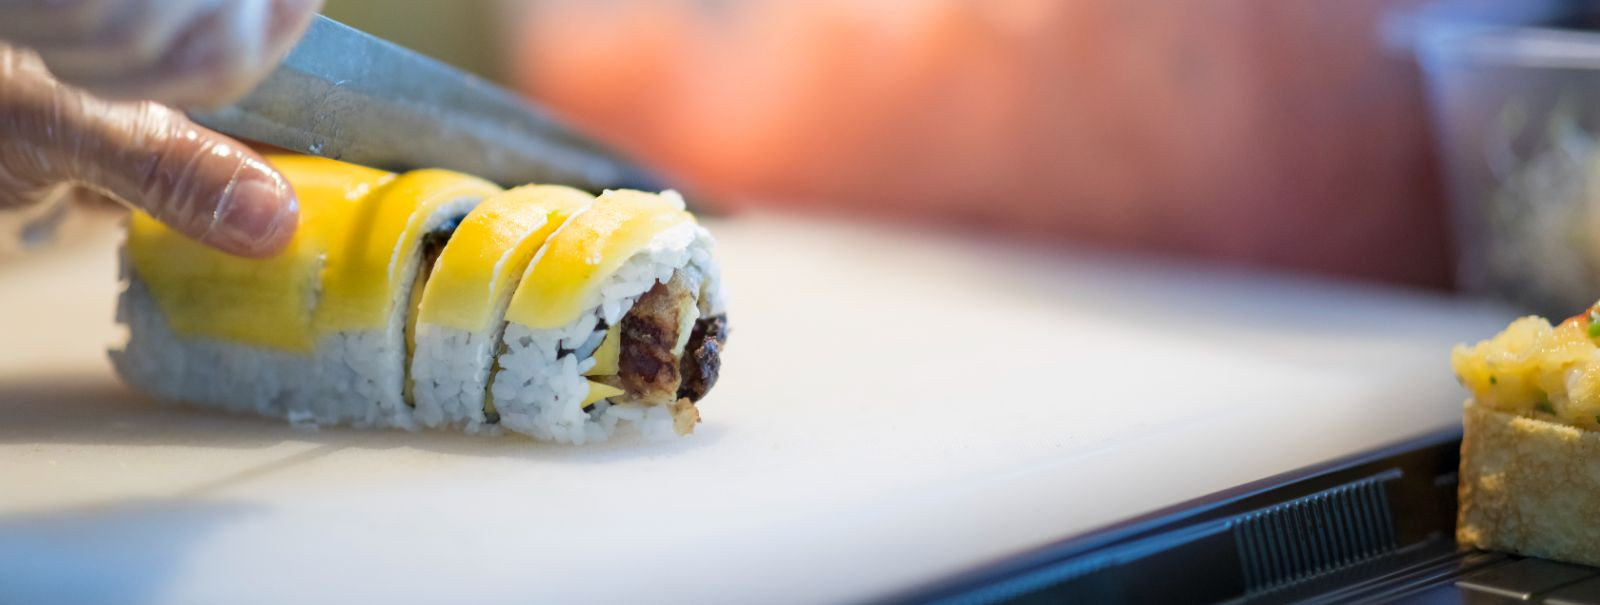 Sushi valmistamine ei ole lihtsalt kulinaarne protsess; see on kunstivorm, mis nõuab täpsust, kannatlikkust ja õrna puudutust. Sushi loomise teekond algab värsk